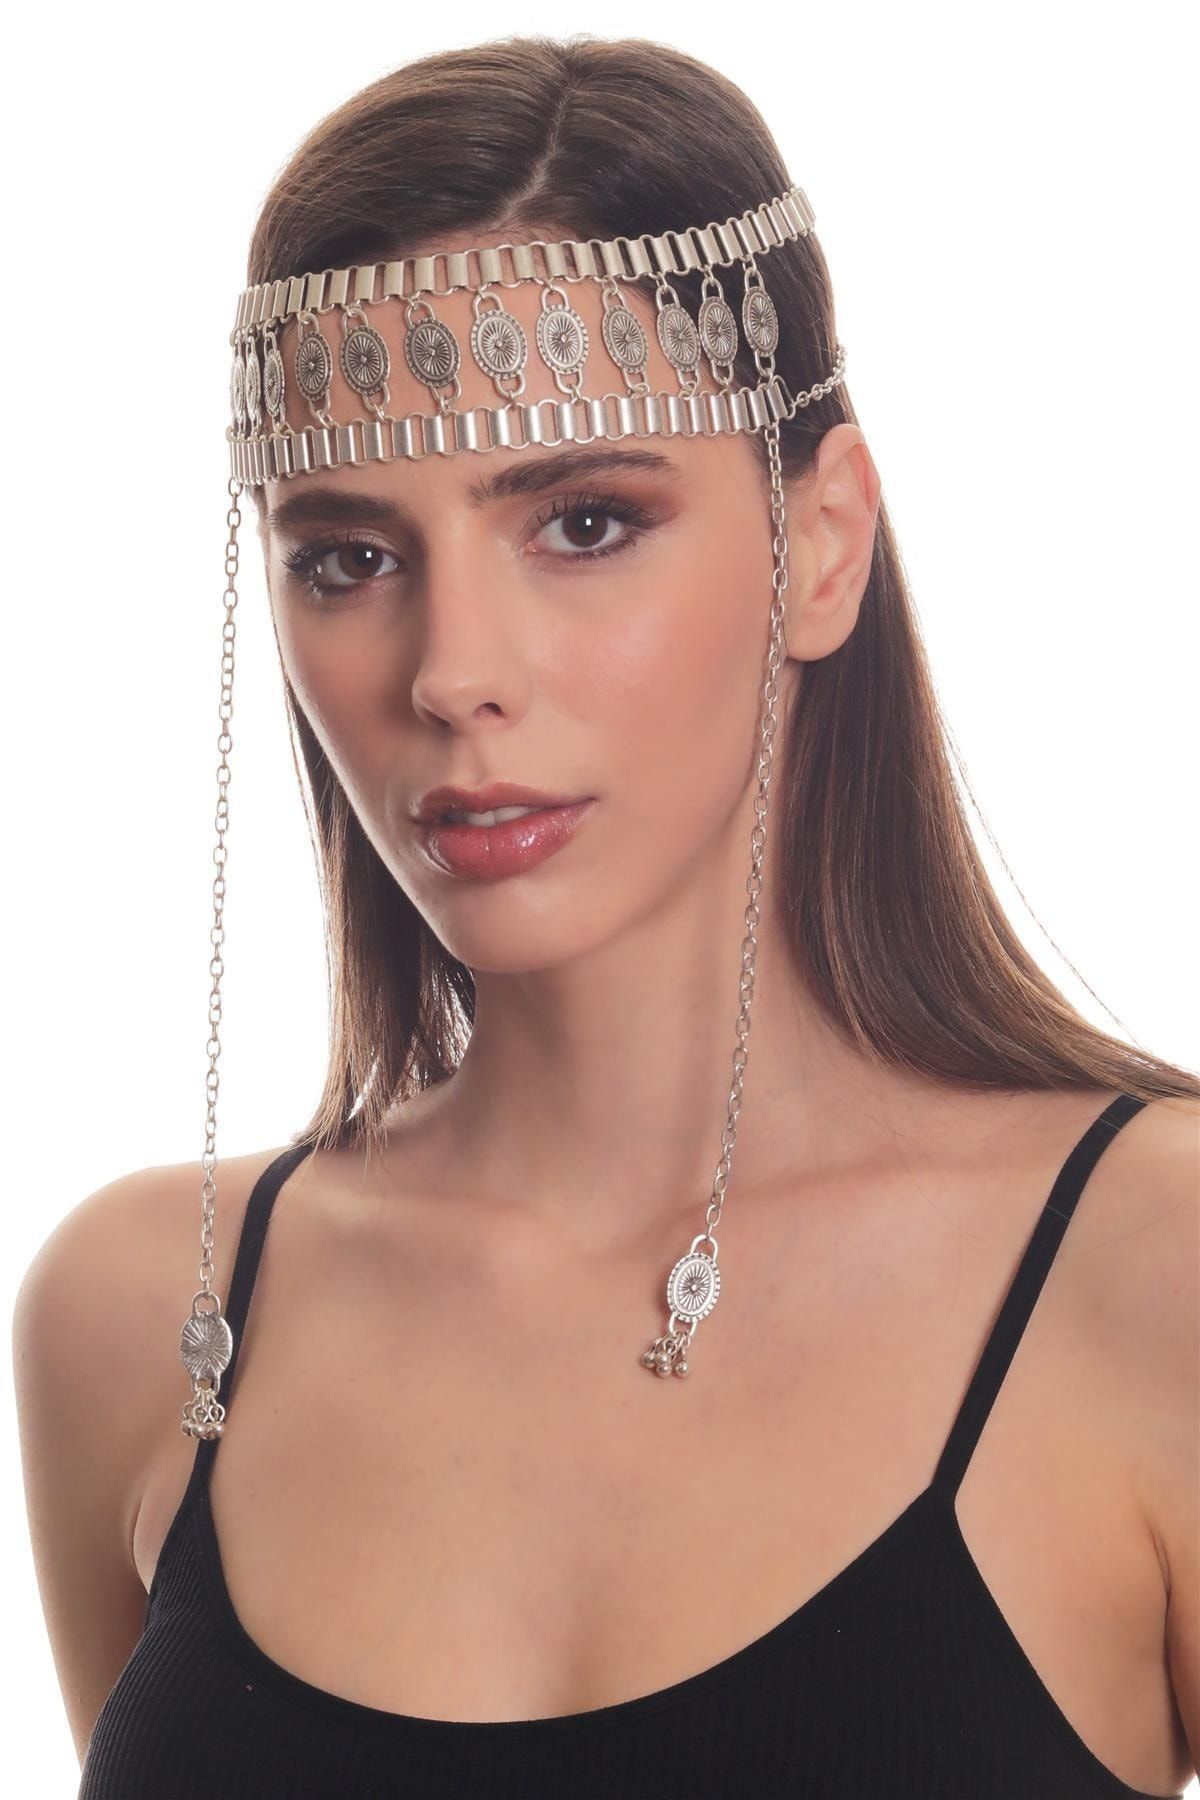 LABALABA Kadın Antik Gümüş Kaplama Zincirli Geniş Bant Tasarım Saç Zinciri